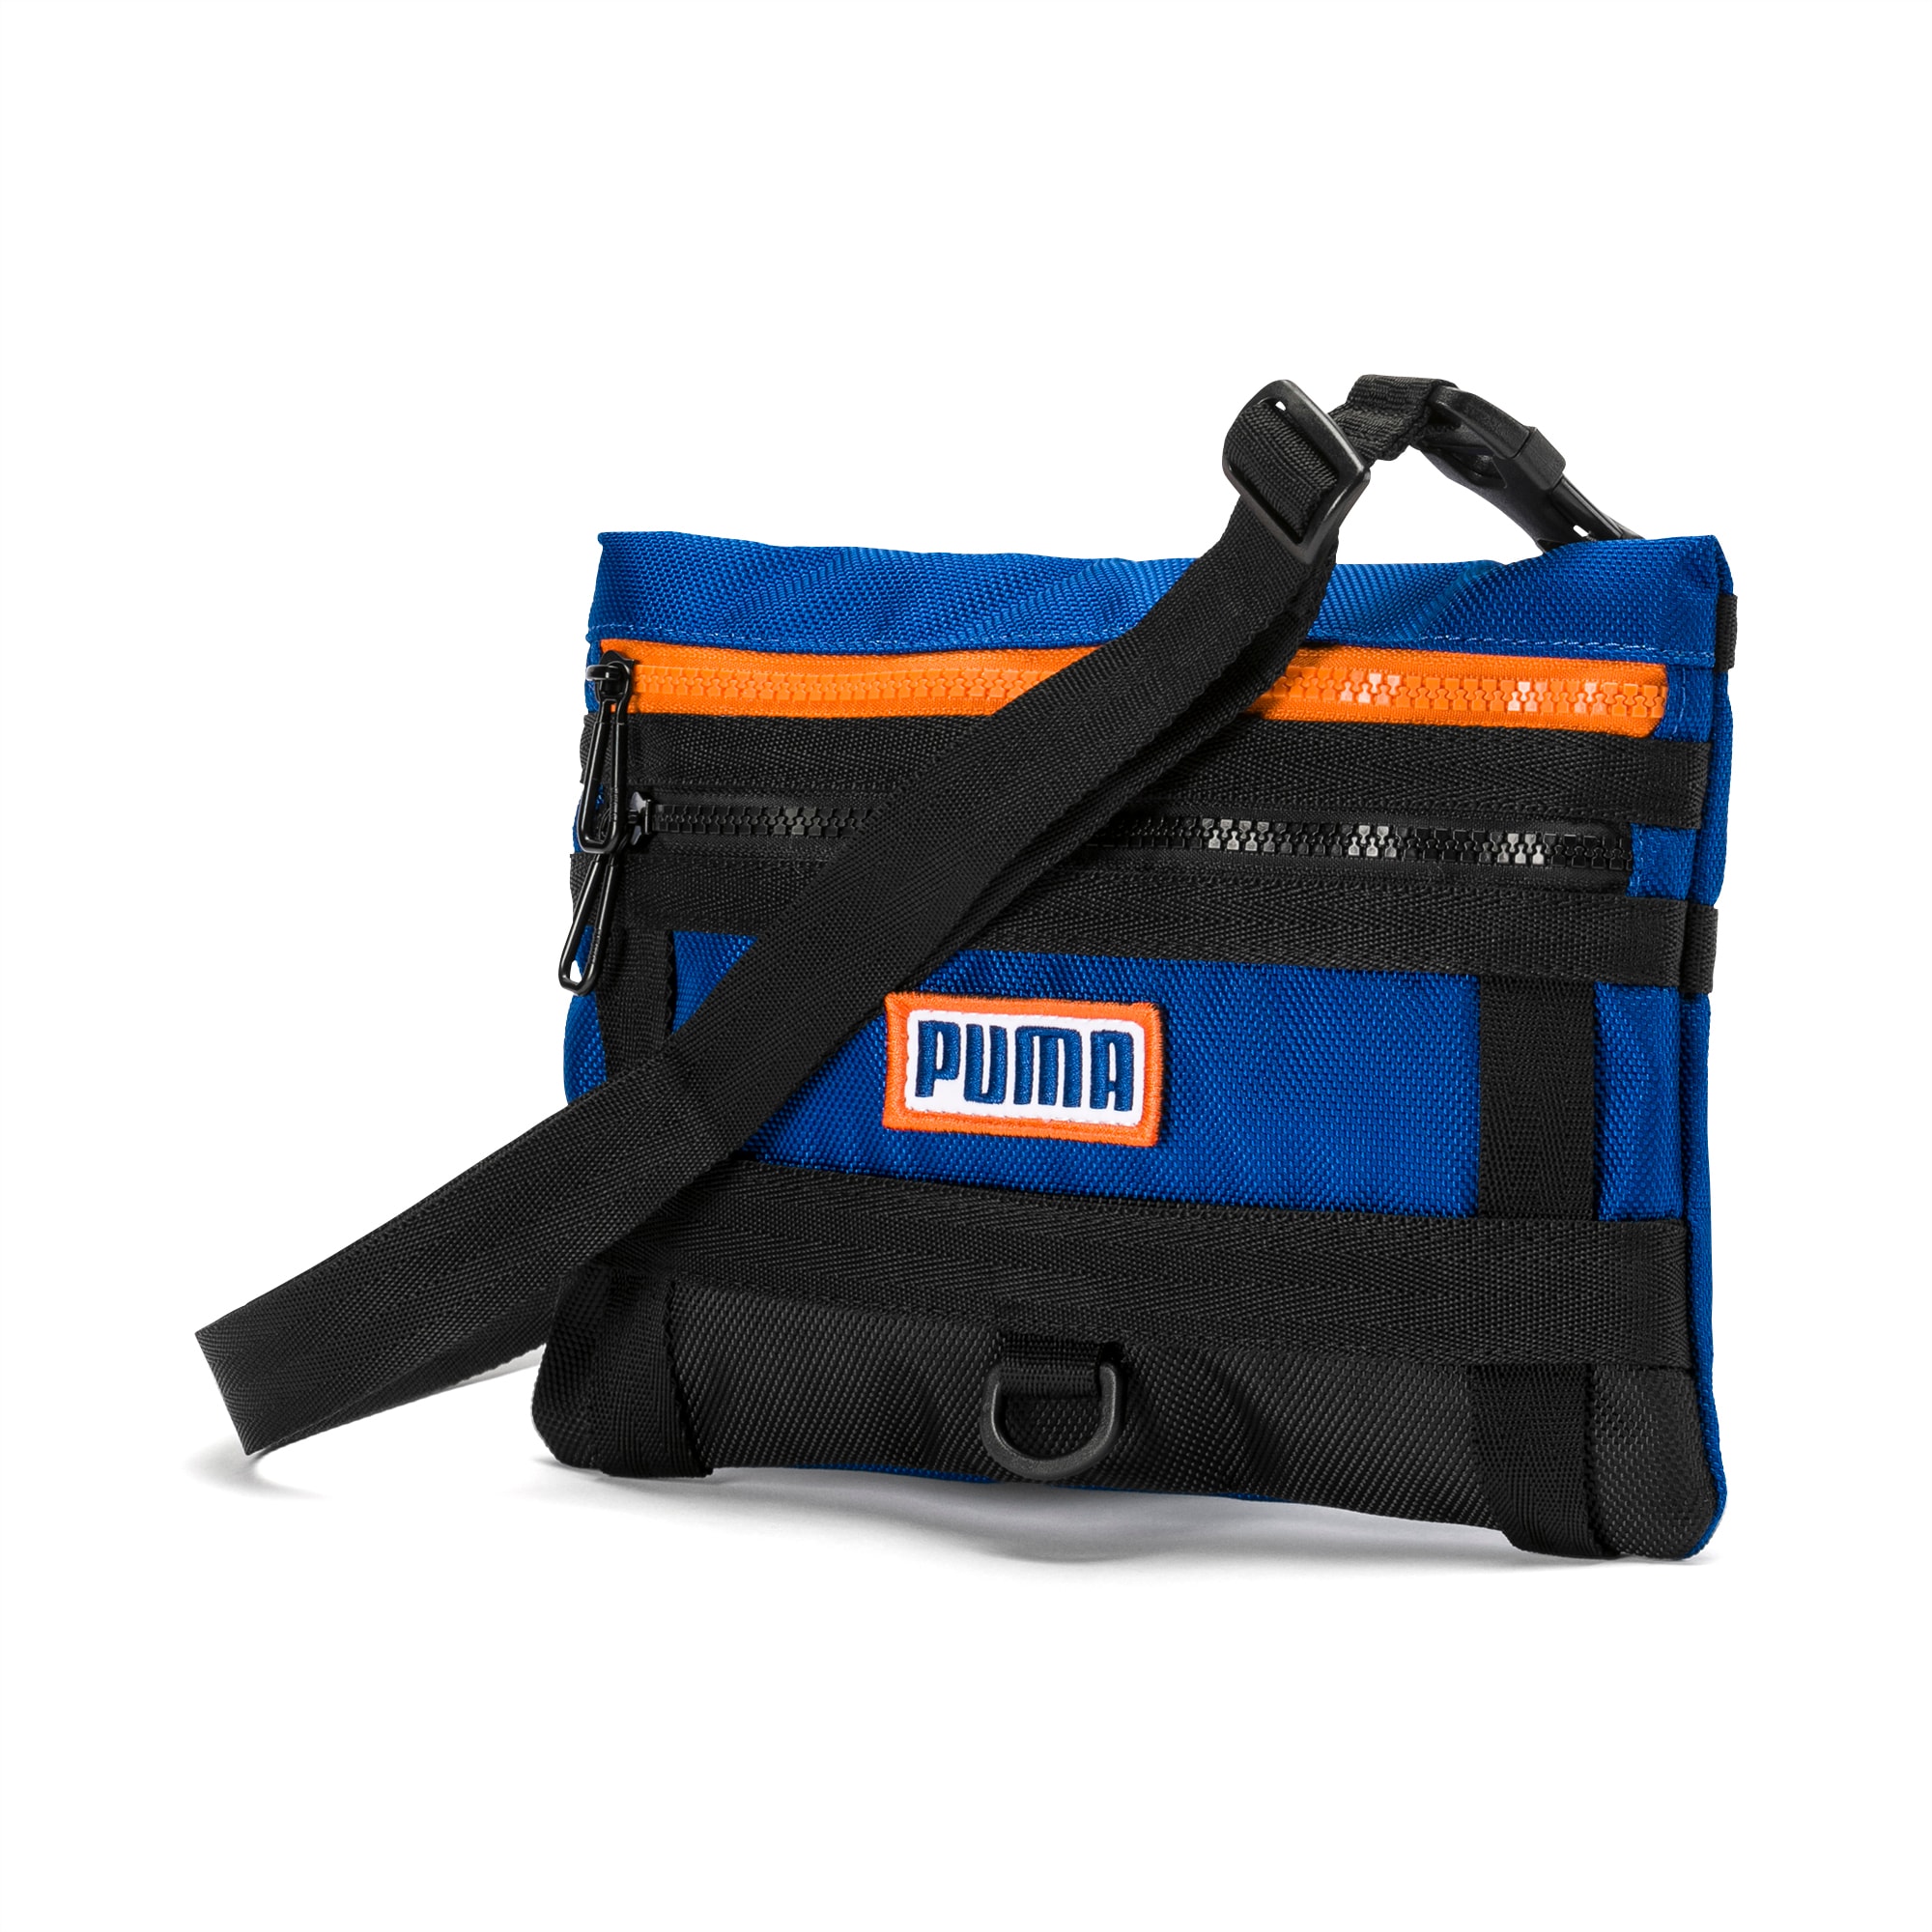 puma shoulder bags for school